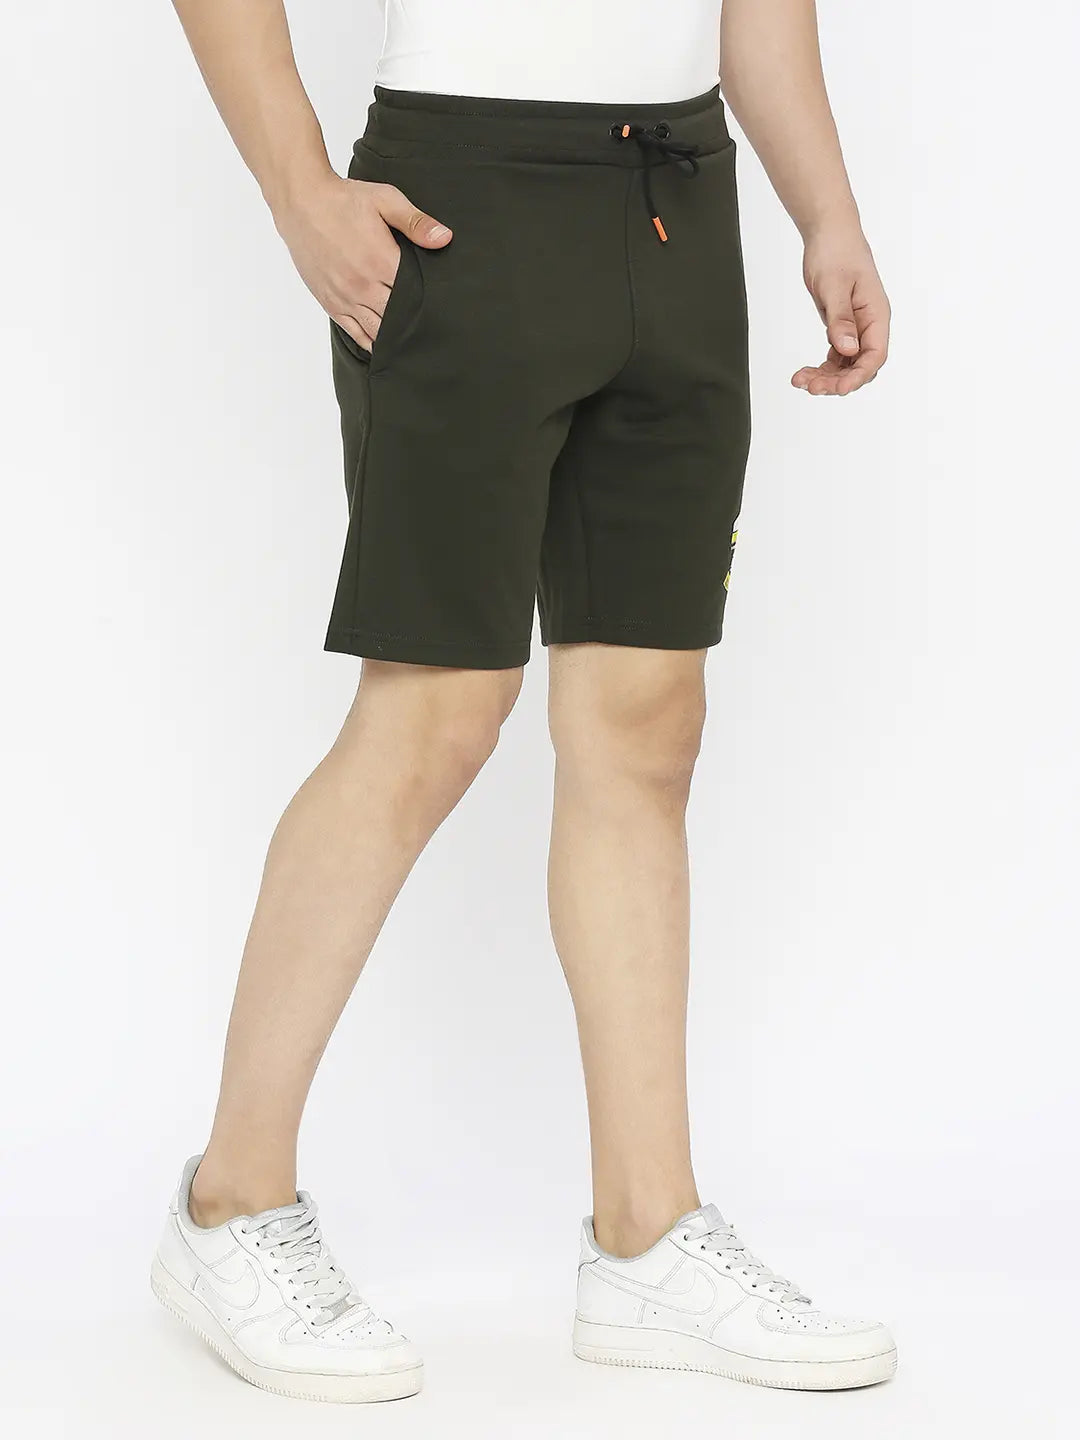 Spykar Men Military Olive Blended Regular Fit Knee Length Plain Shorts